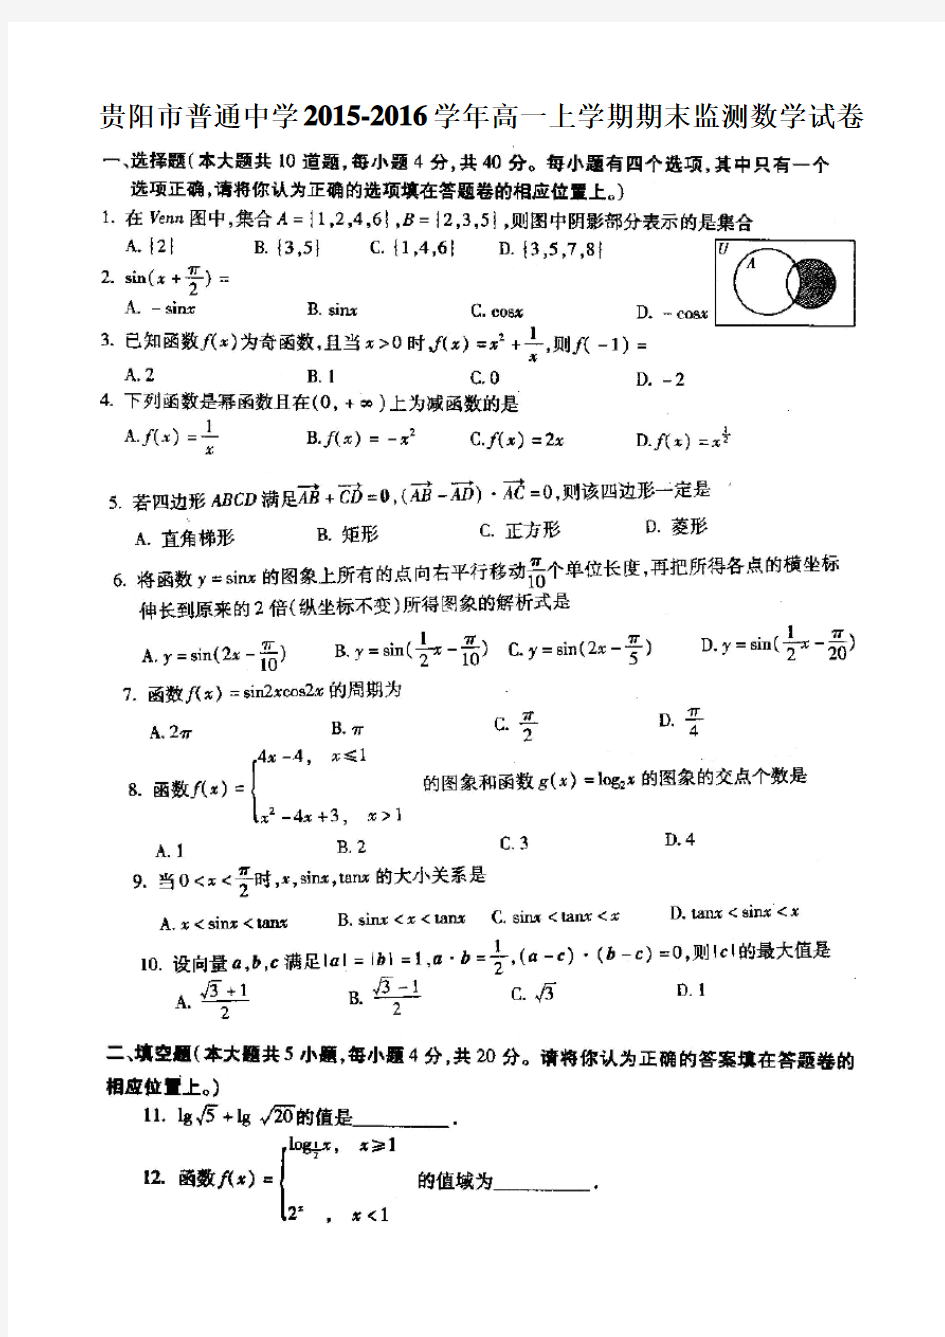 贵阳市2015-2016学年度高一年级第一学期期末考试数学试卷超清晰版(含答案)